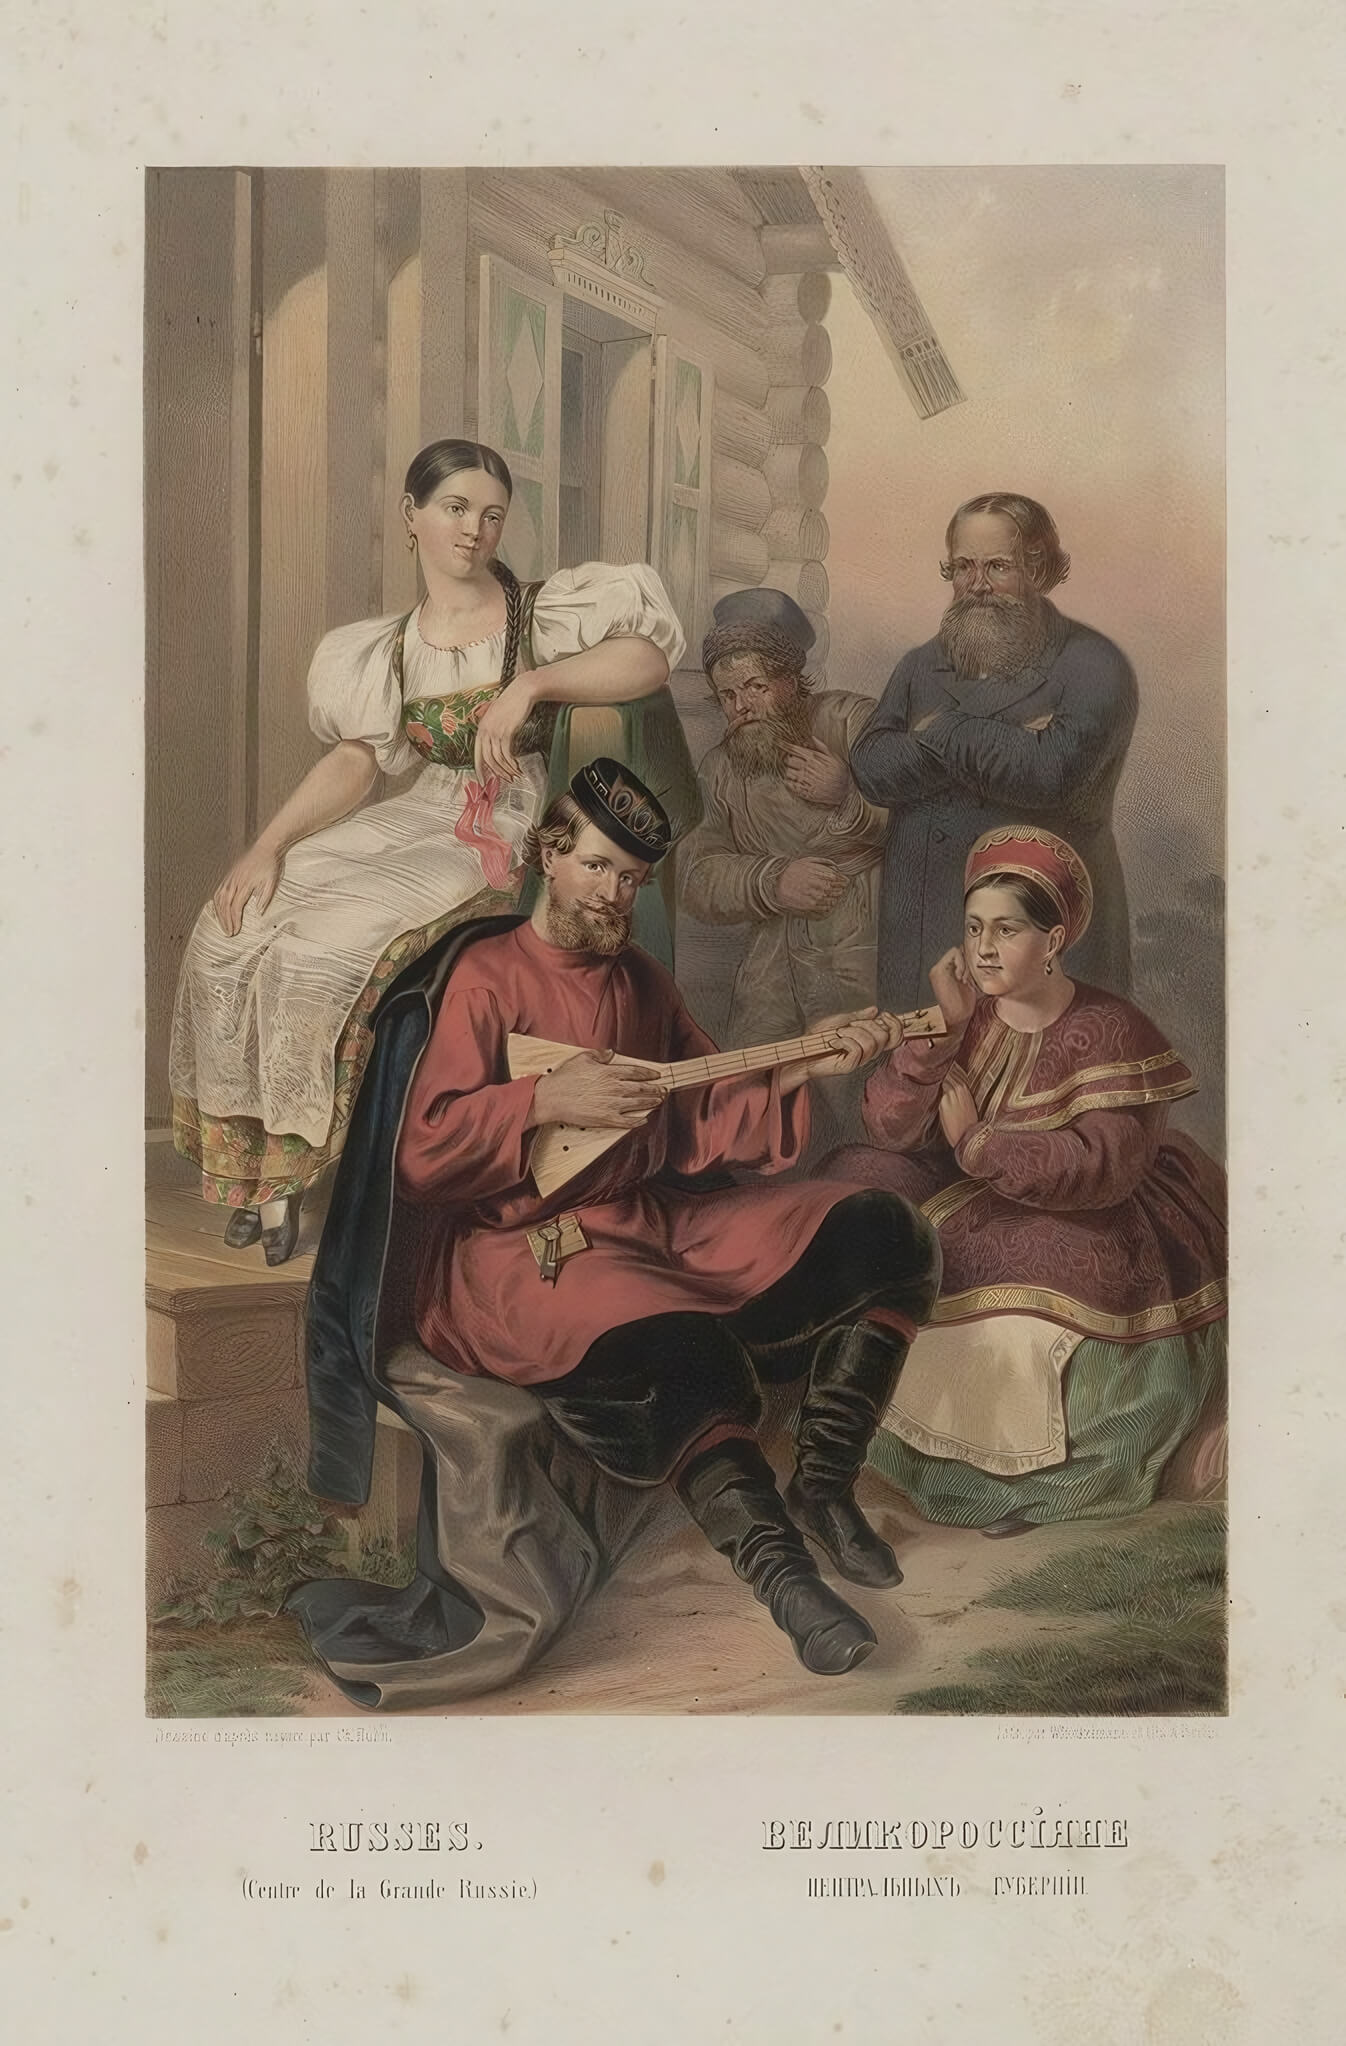 Иллюстрация из "Этнографическое описание народов России, 1862 г." Г-Ф. Х. Паули